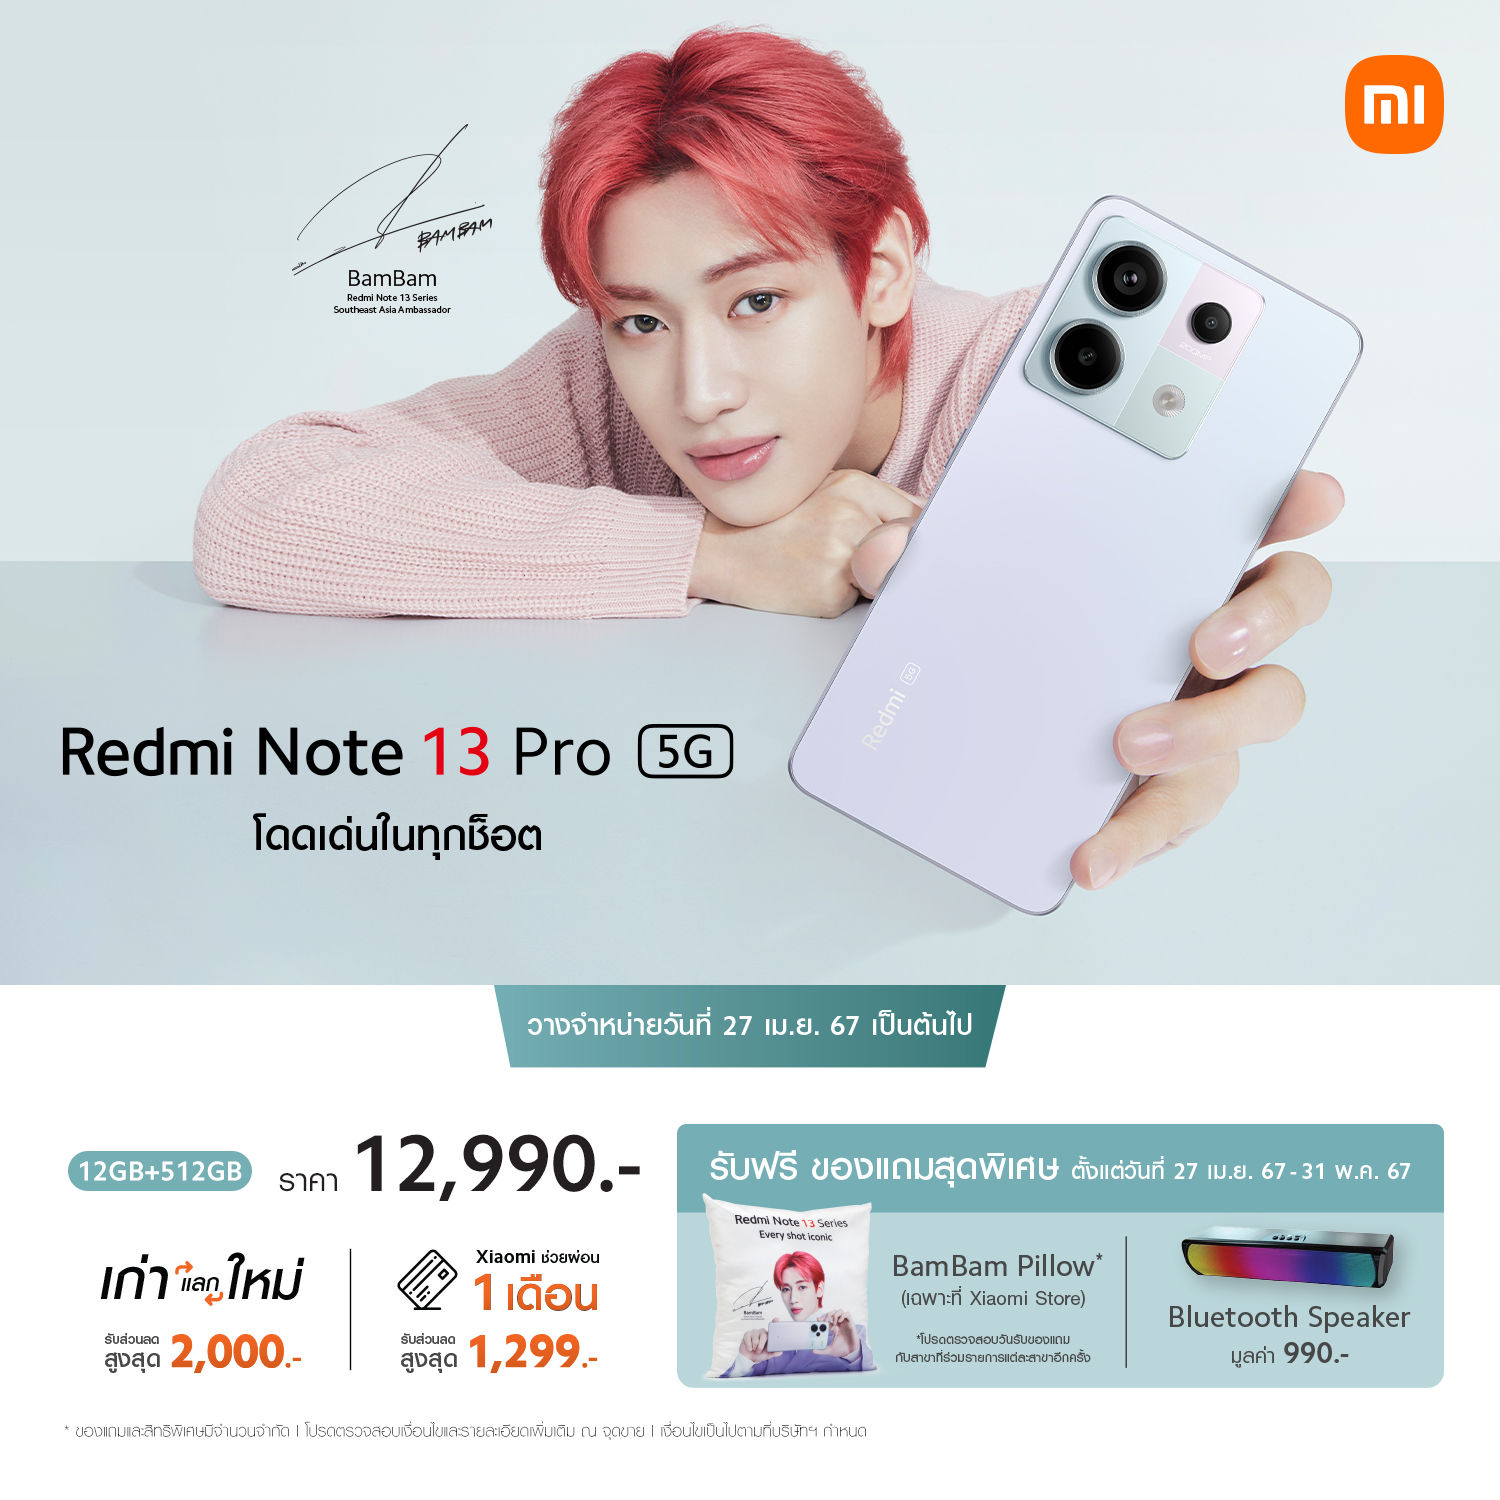 Redmi Note 13 Pro 5G ขาย 27 เม.ย. 67 เป็นต้นไป ในราคาเพียง 12,990 บาท